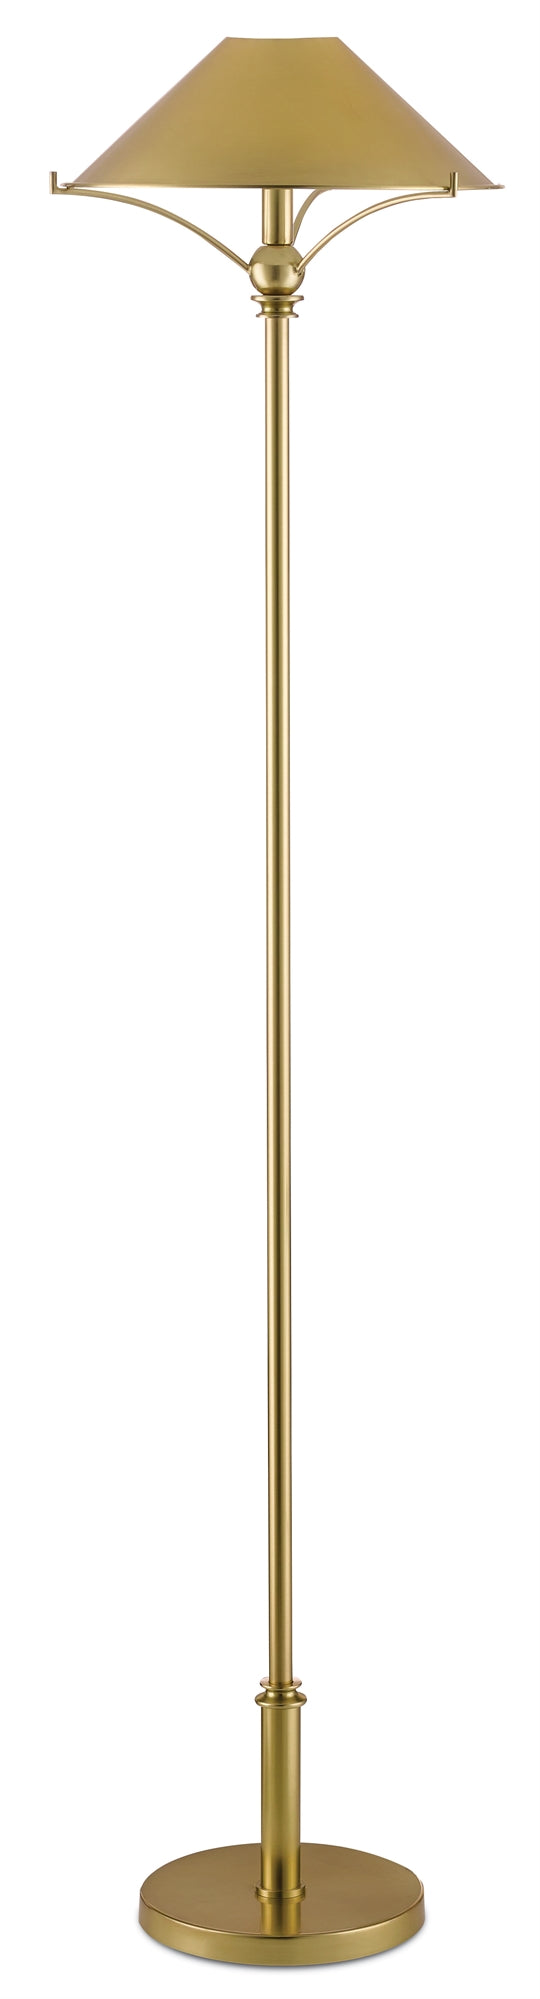 Currey and Company Maarla Brass Floor Lamp 8000-0050